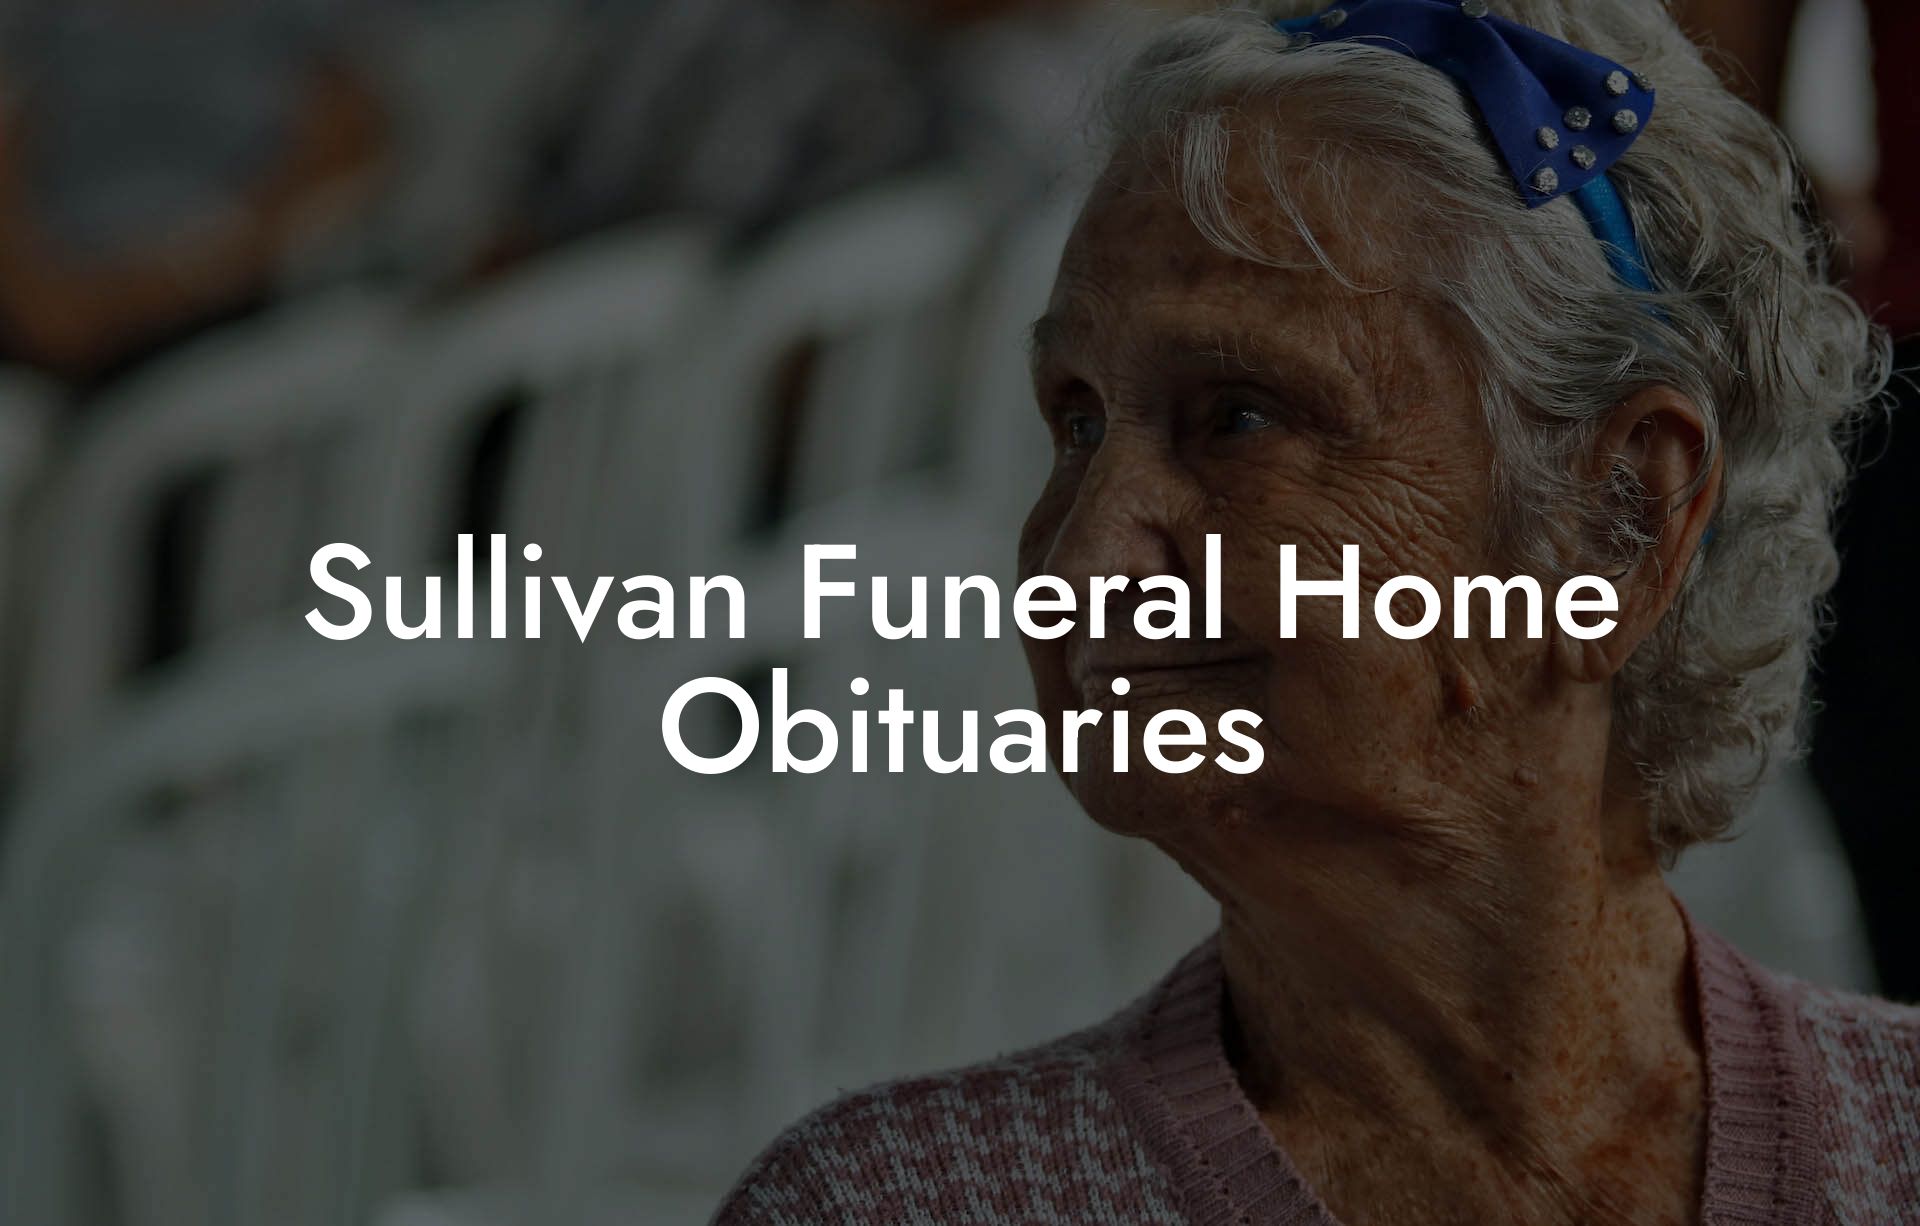 Sullivan Funeral Home Obituaries